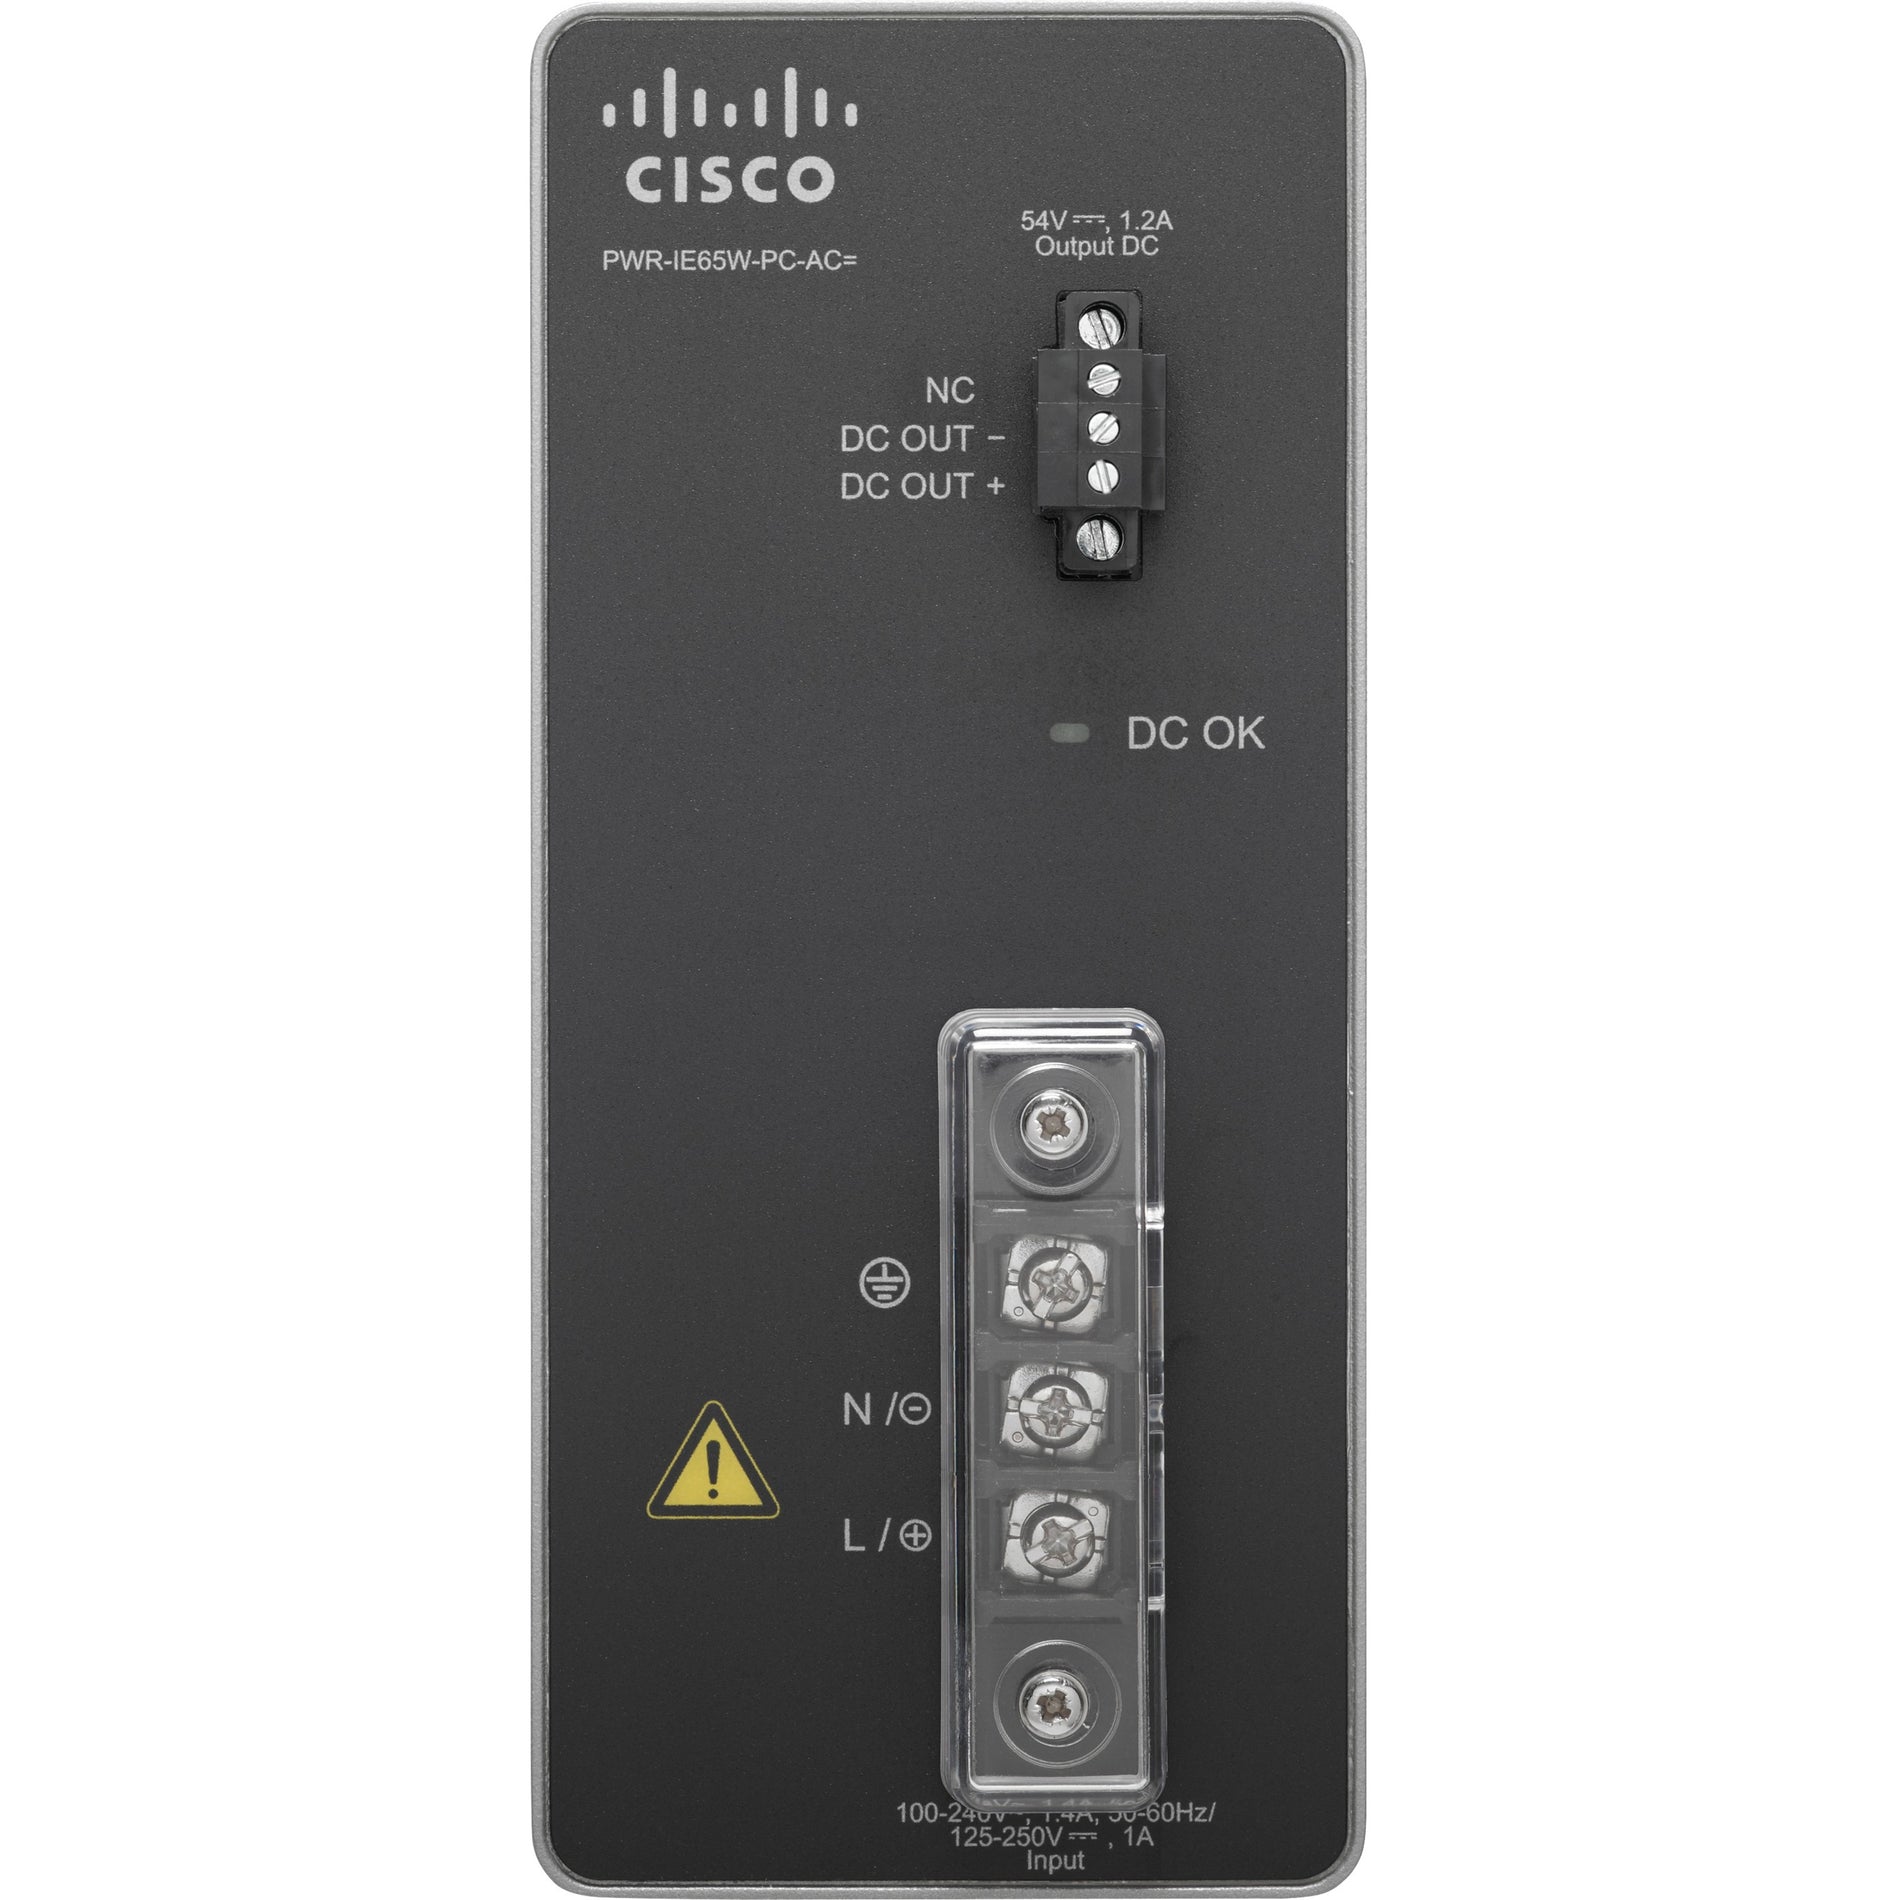 Cisco PWR-IE65W-PC-AC= Power Module, 110V AC, 220V AC, 54V DC